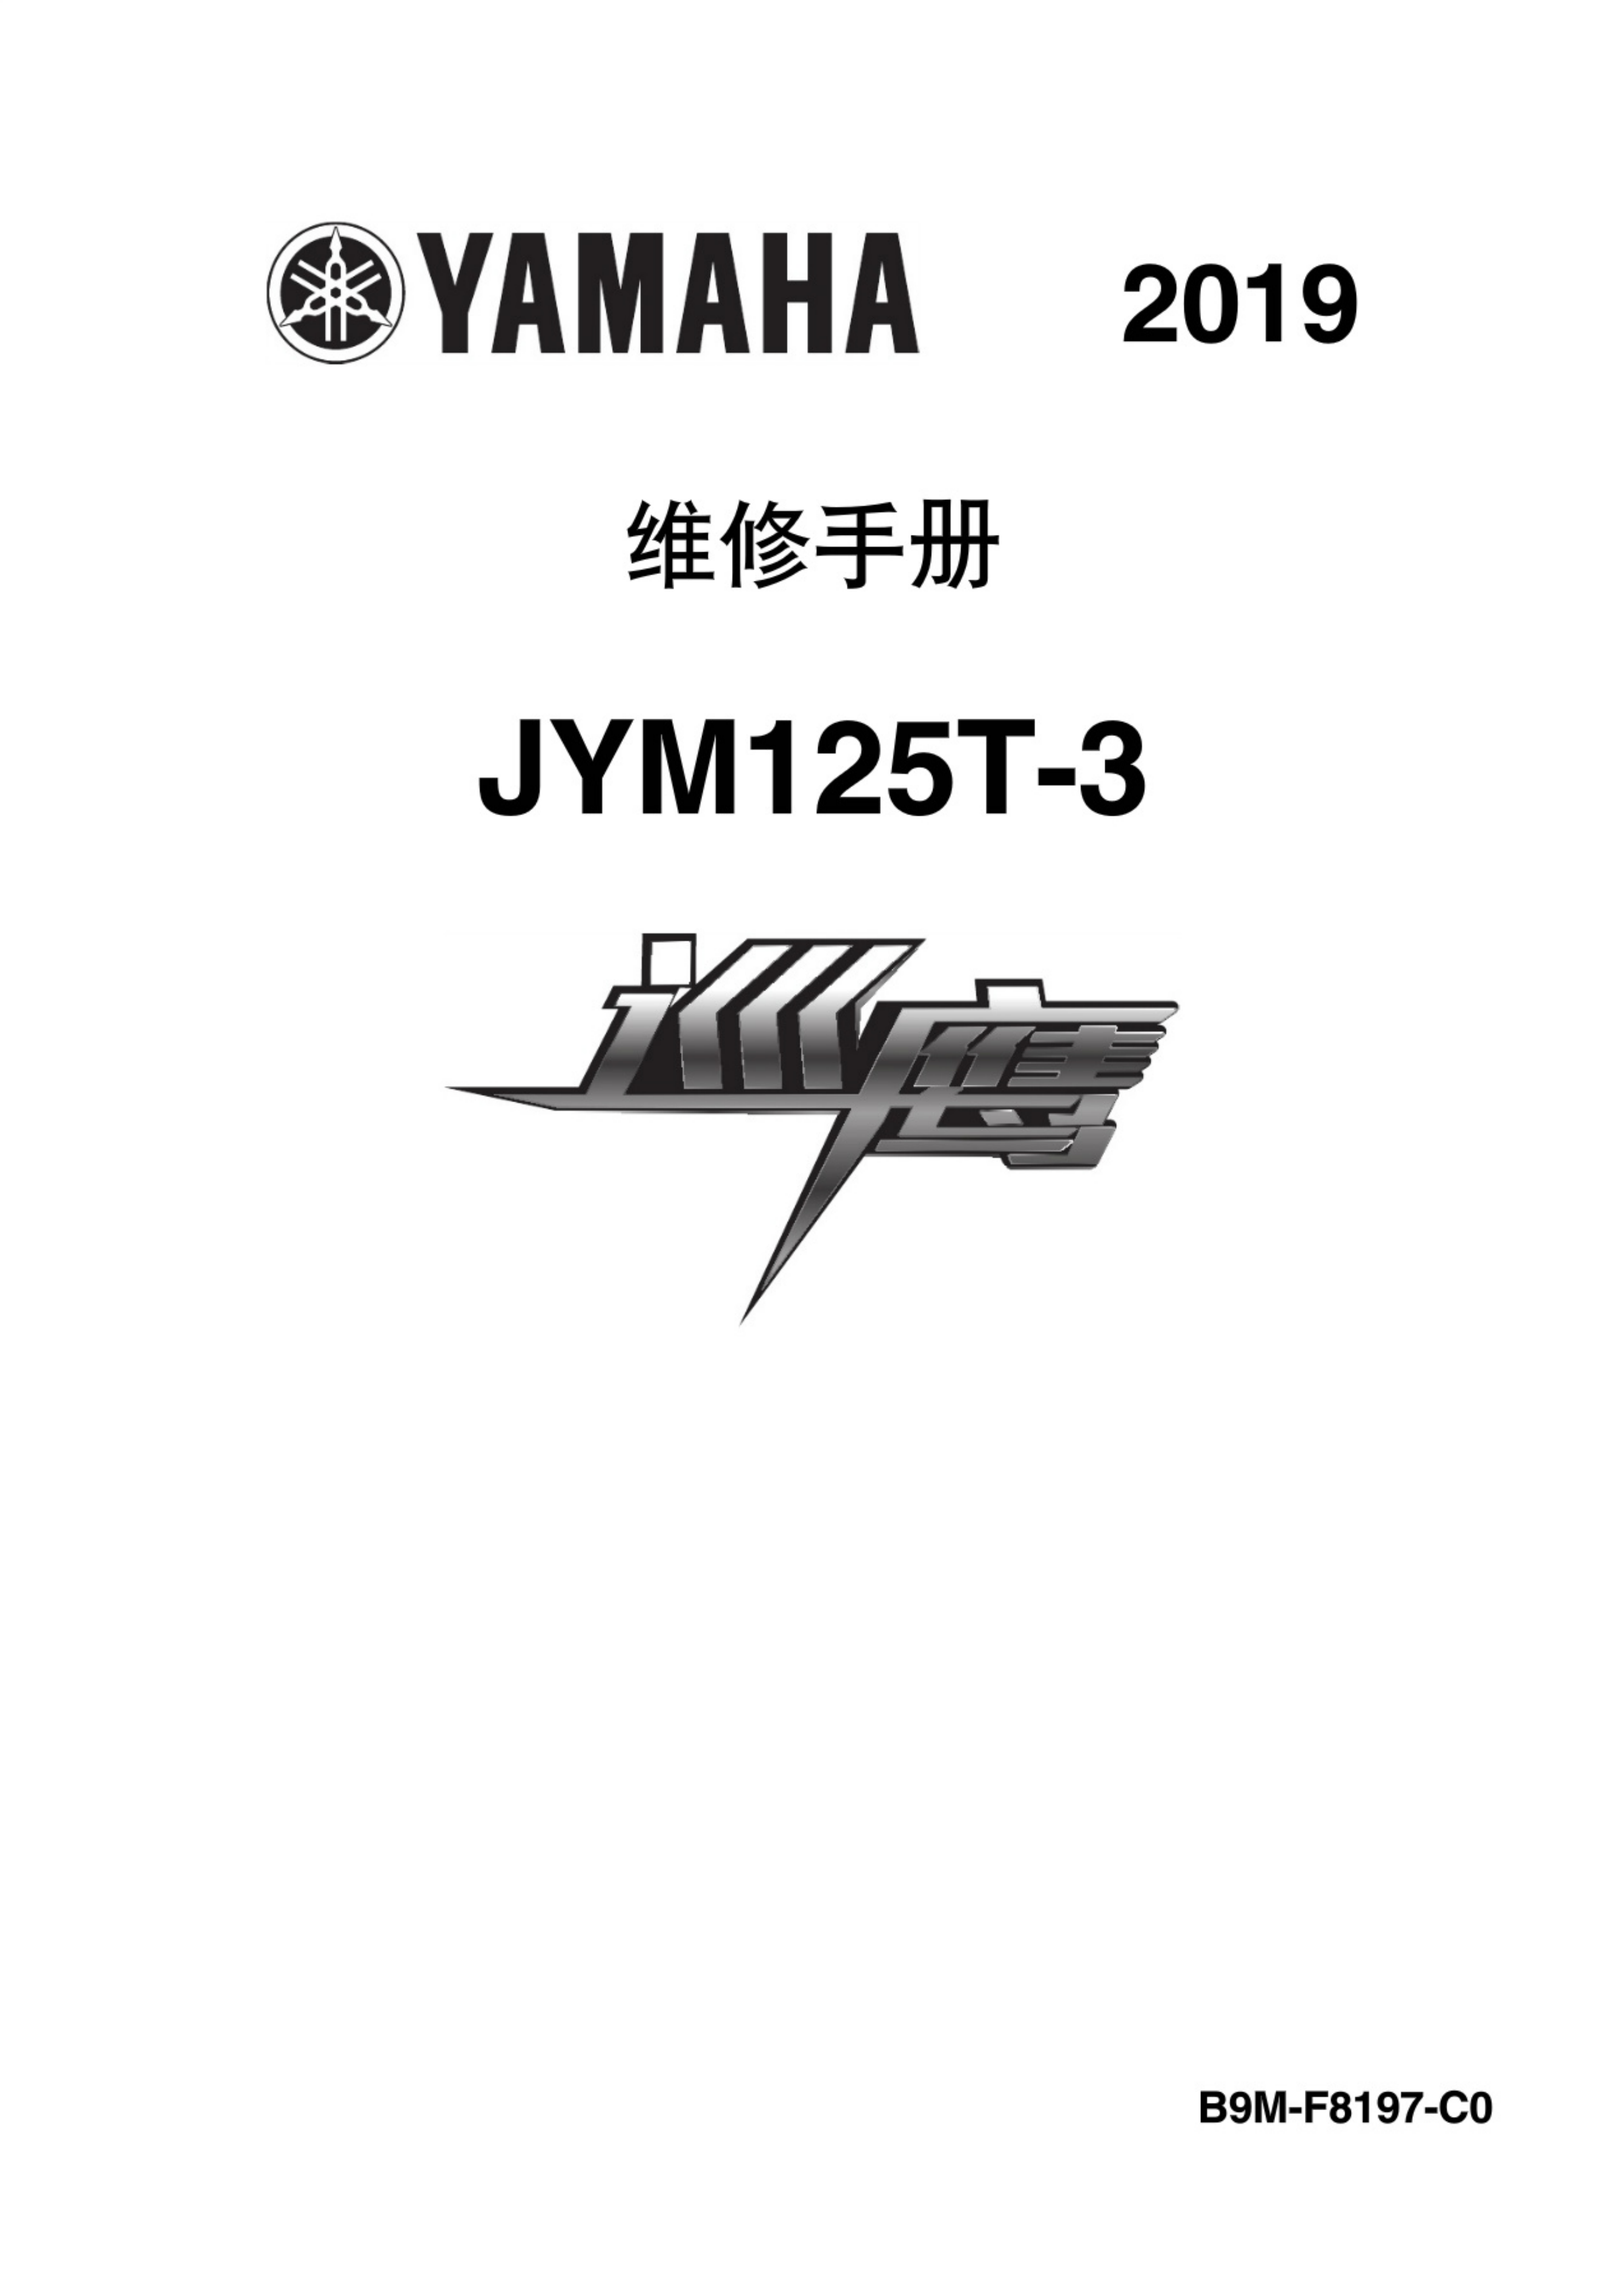 原版中文2019年雅马哈巡鹰维修手册JYM125T-3维修手册插图